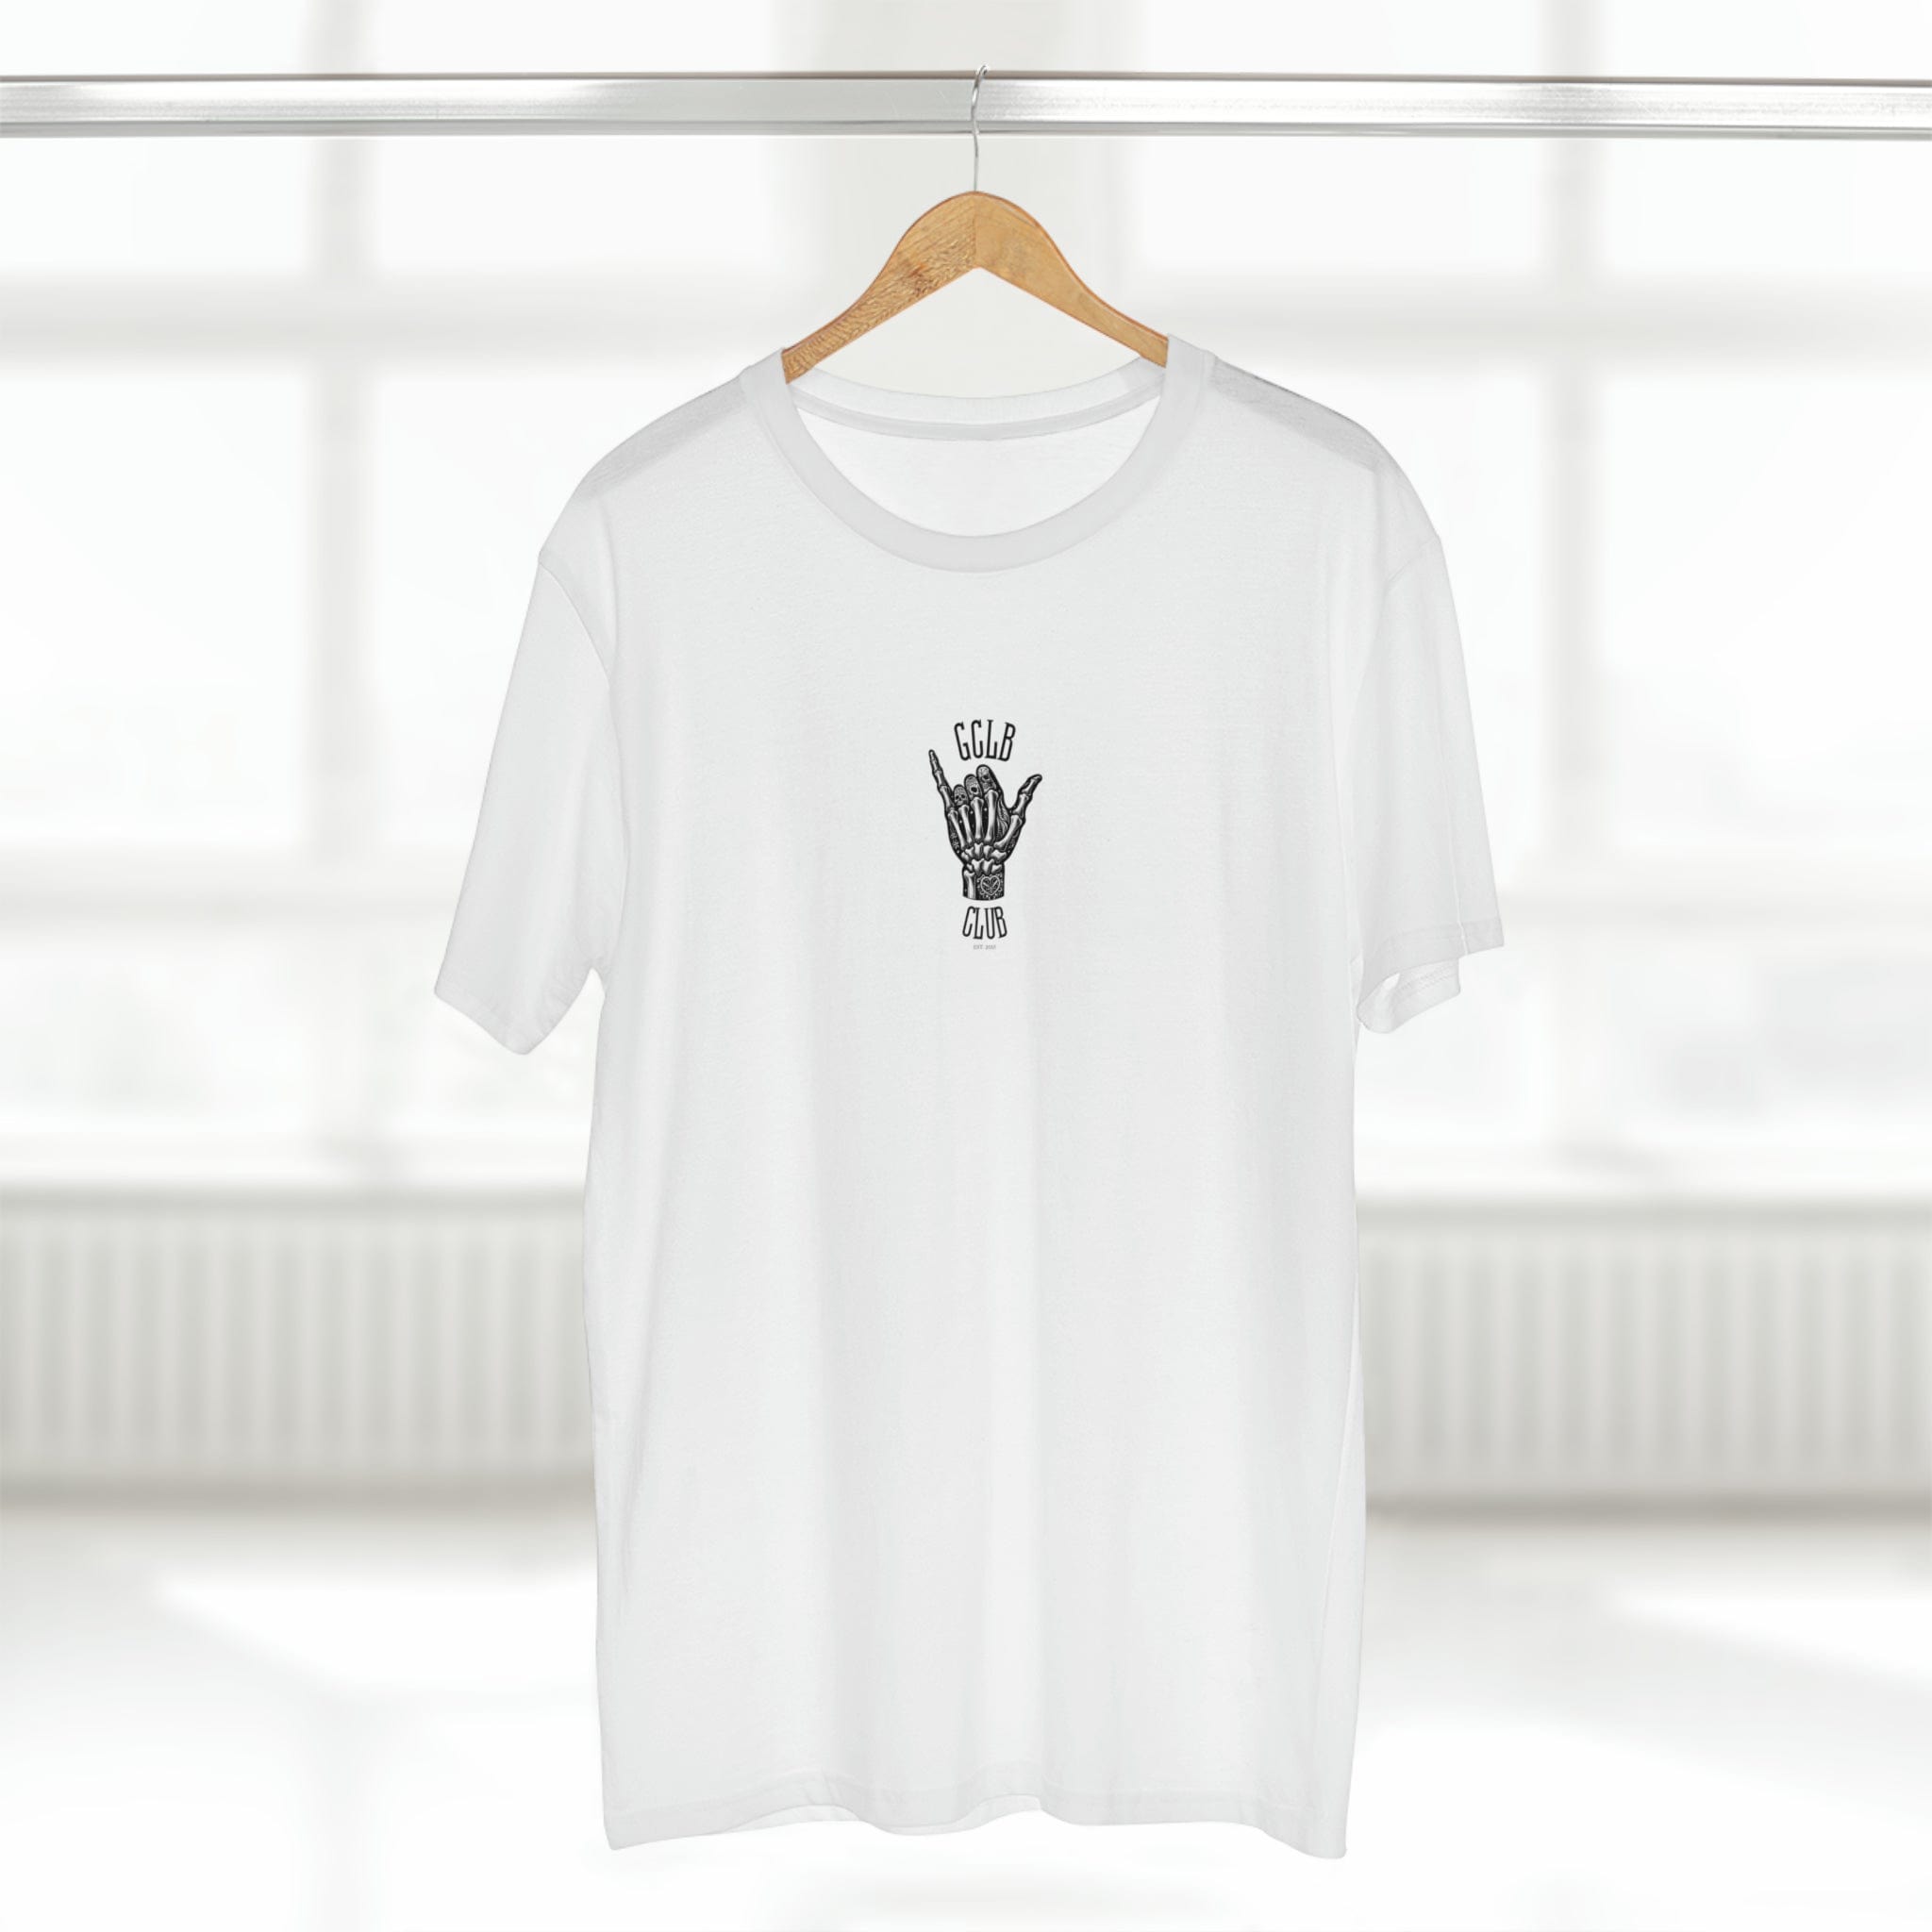 Printify T-Shirt White / S GCLB Club Shaka - Standard Tee